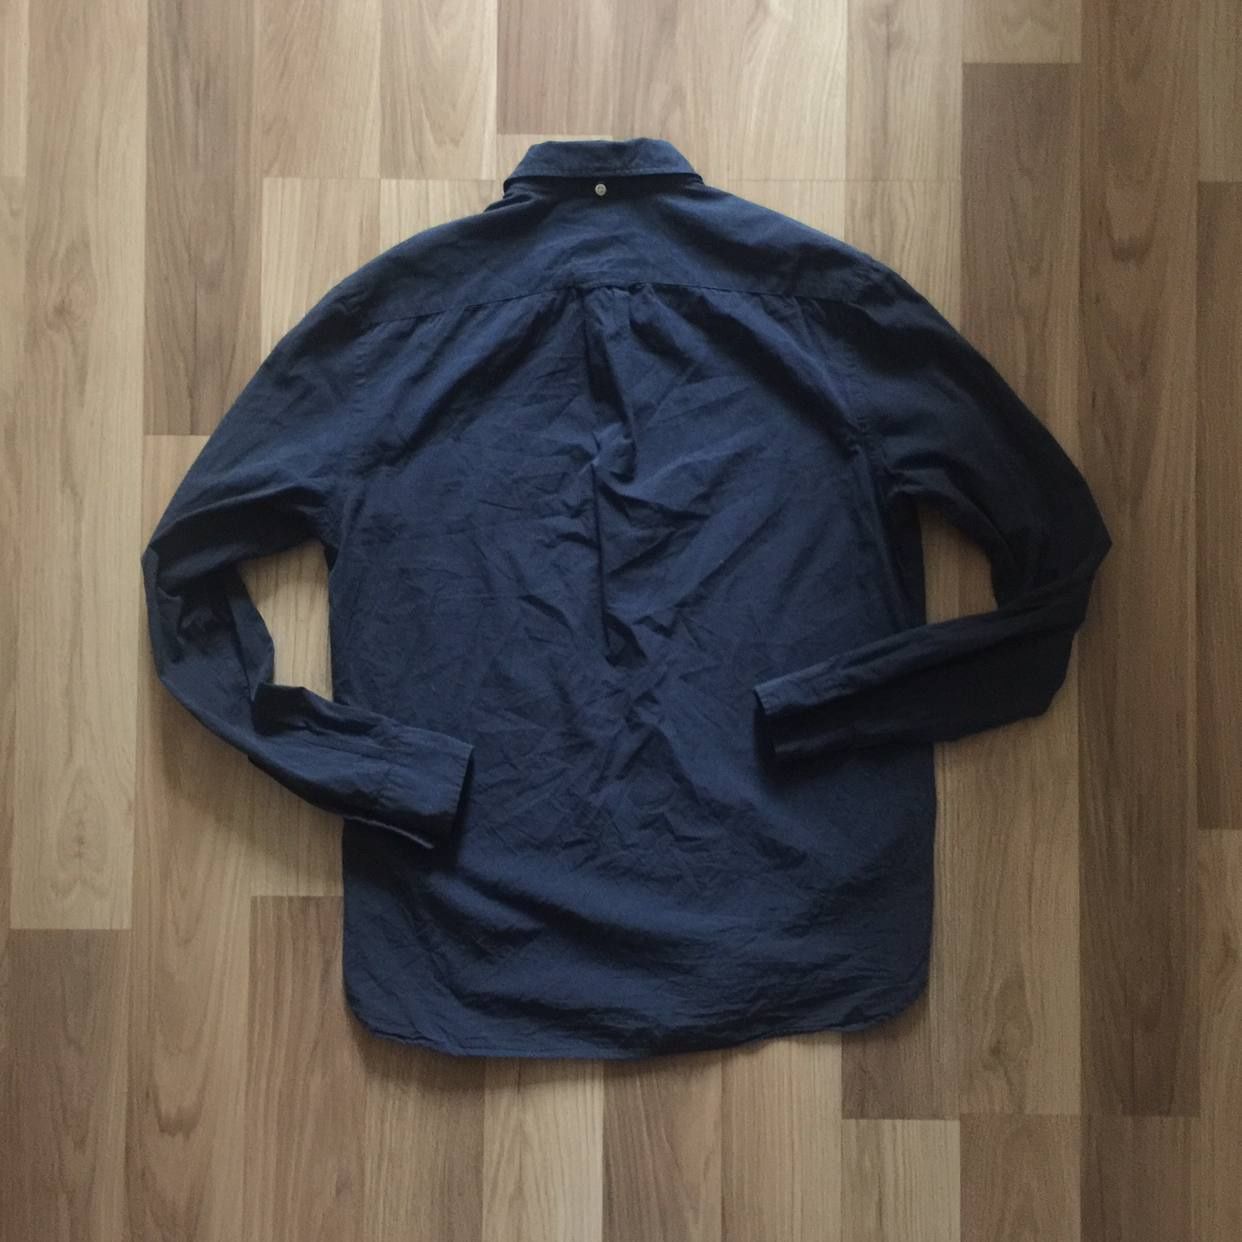 Продам супер крутую мужскую рубашку H&M REGULAR FIT оригинал